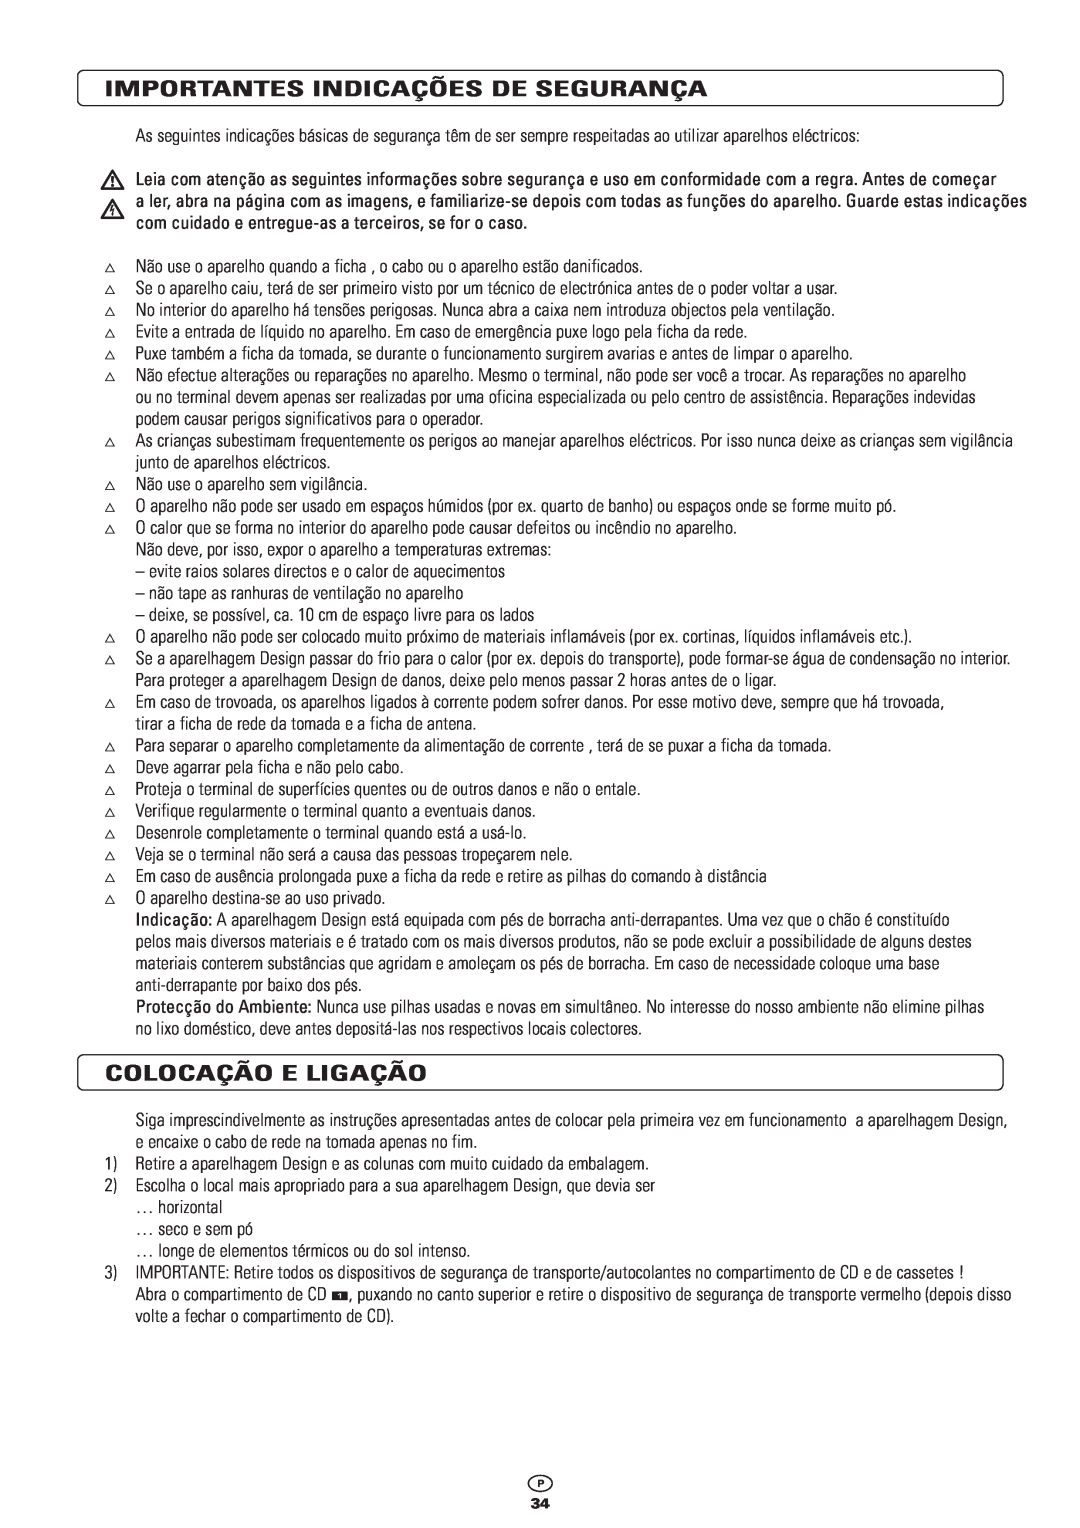 Kompernass KH 2300 manual Importantes Indicações De Segurança, Colocação E Ligação 